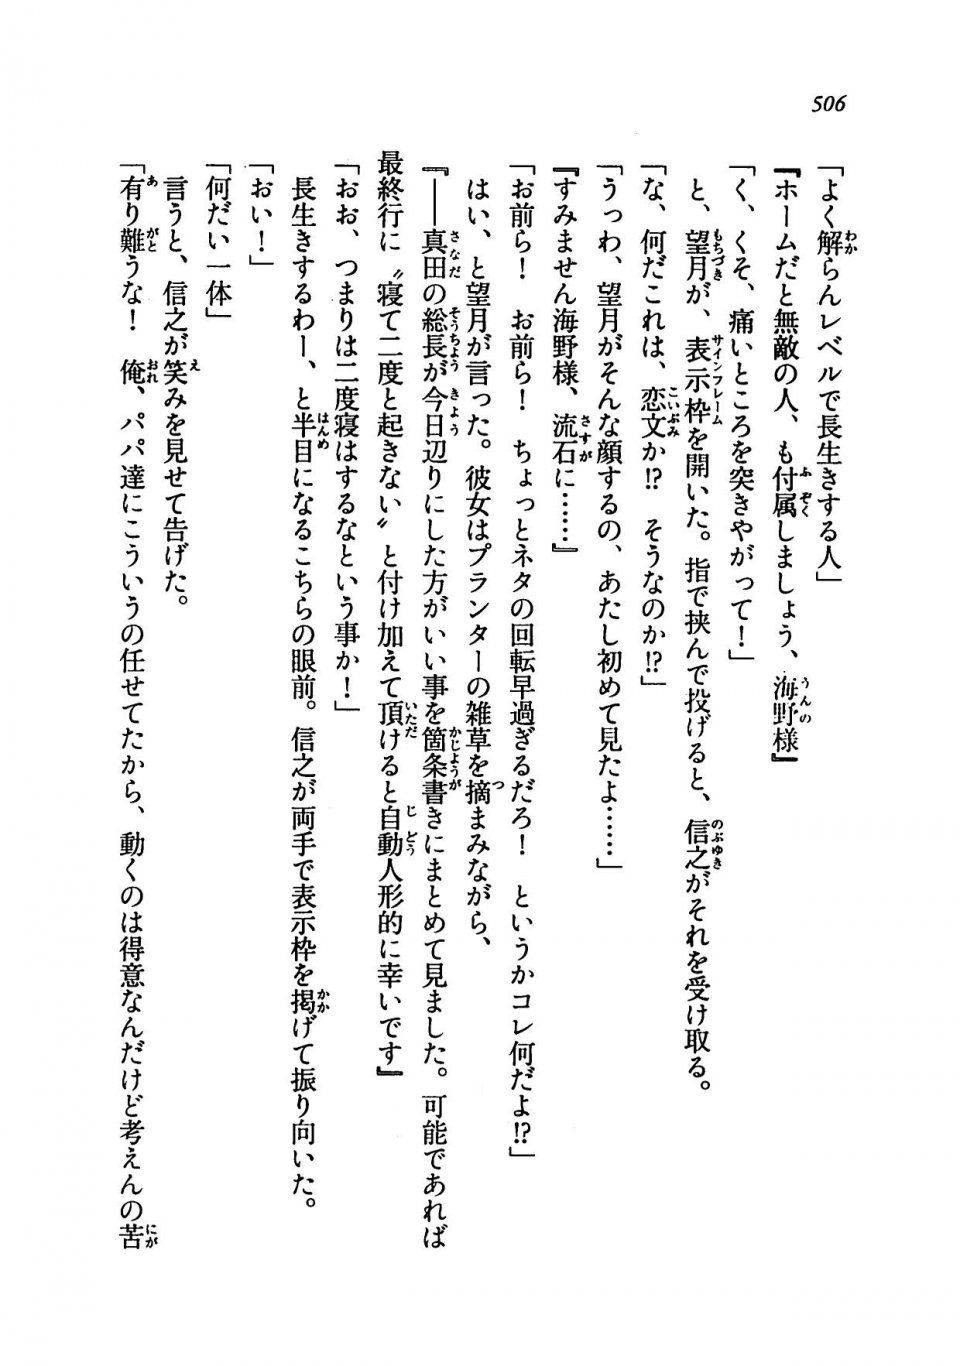 Kyoukai Senjou no Horizon LN Vol 19(8A) - Photo #506